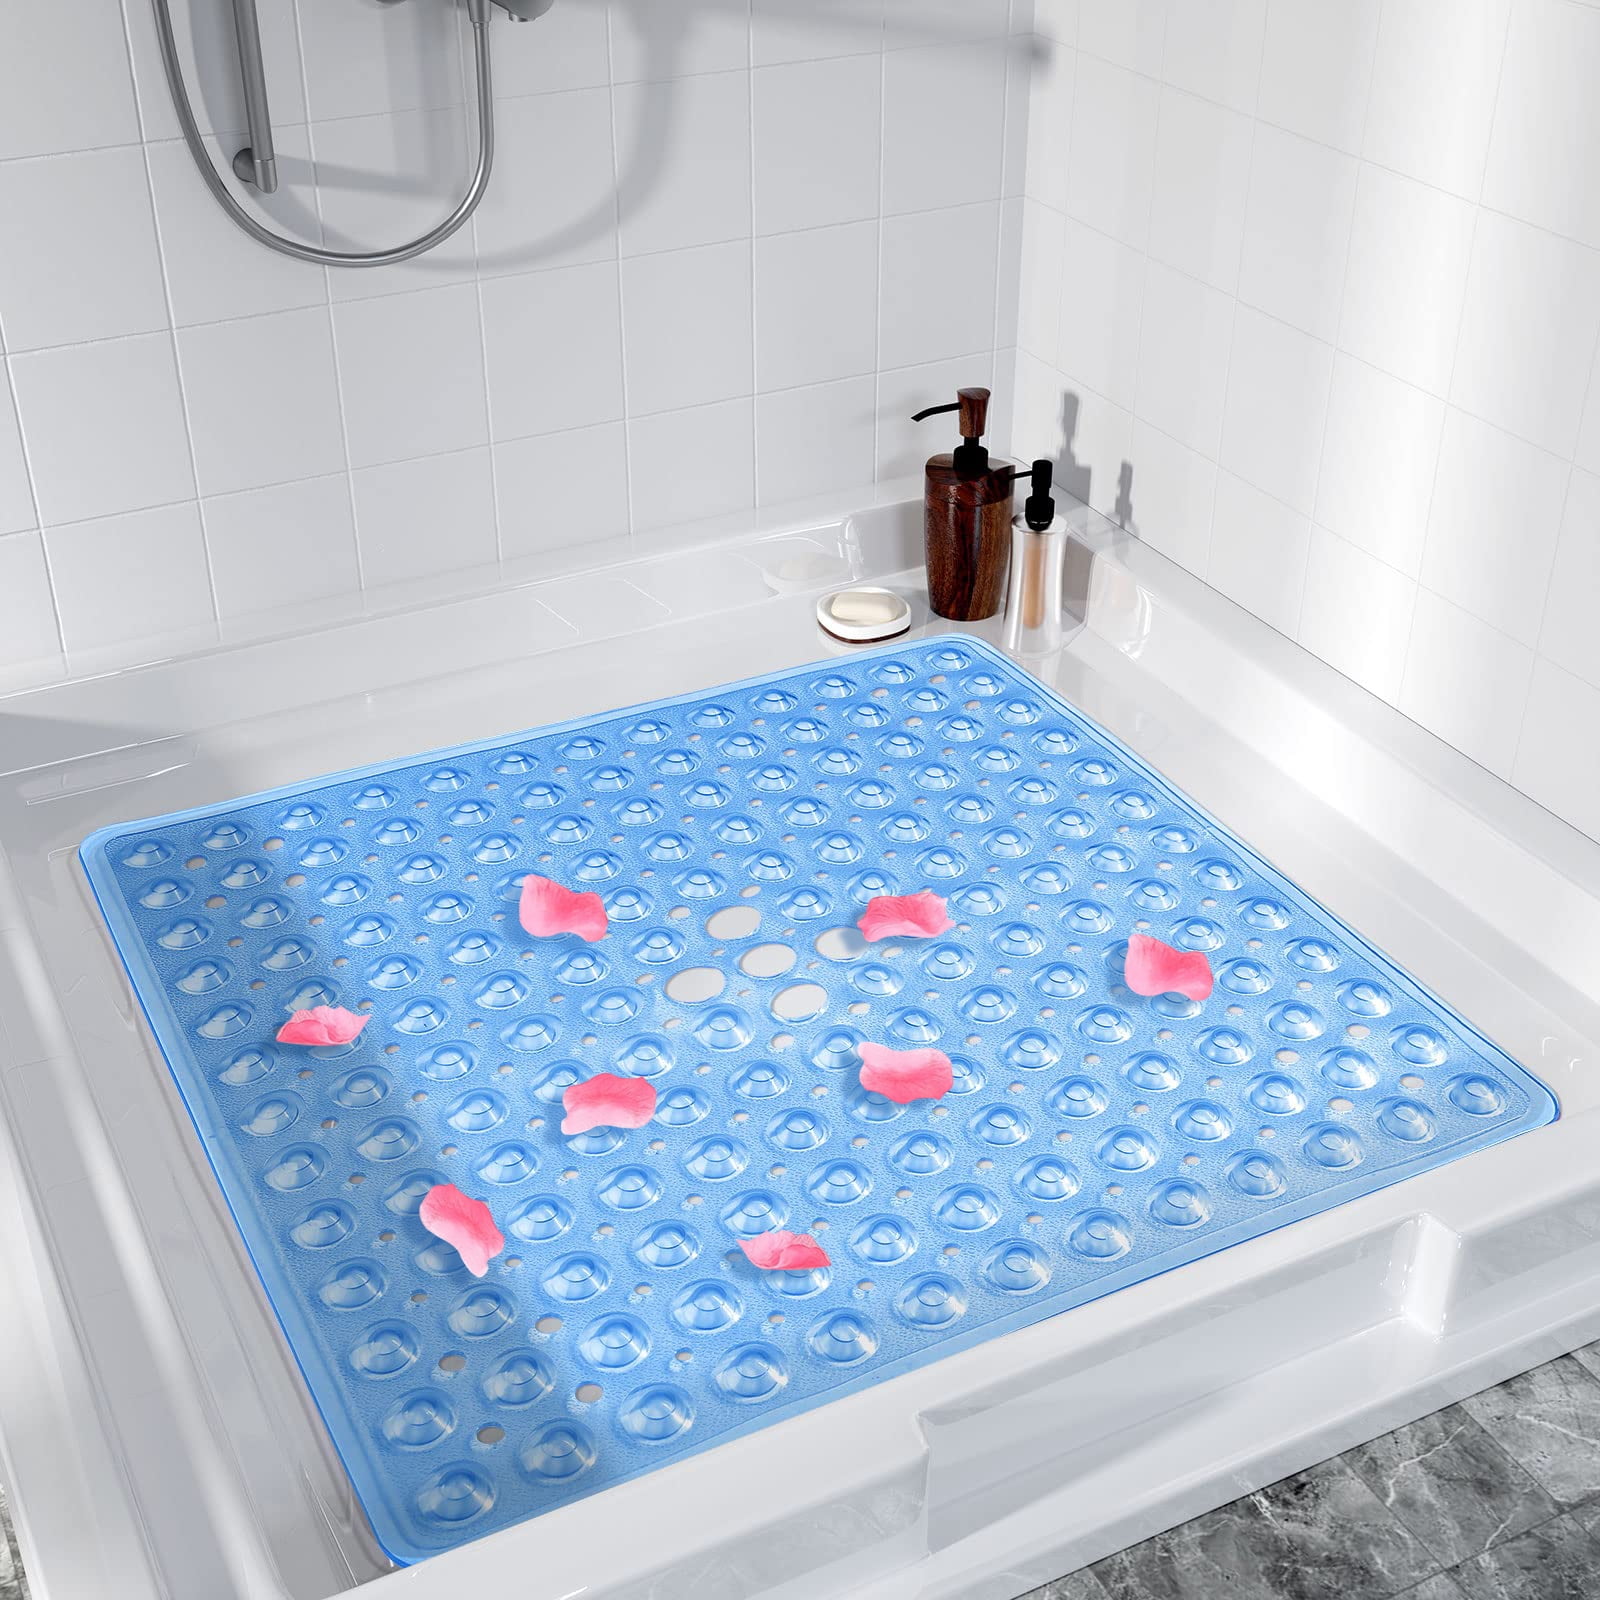 Semfri PVC Loofah Bath Mat Quick Drying Shower Stall Mat Shower Mat Bathtub Mat Non Slip 16x24 inch Soft Textured Tub Mat for Wet Area Quick Drying